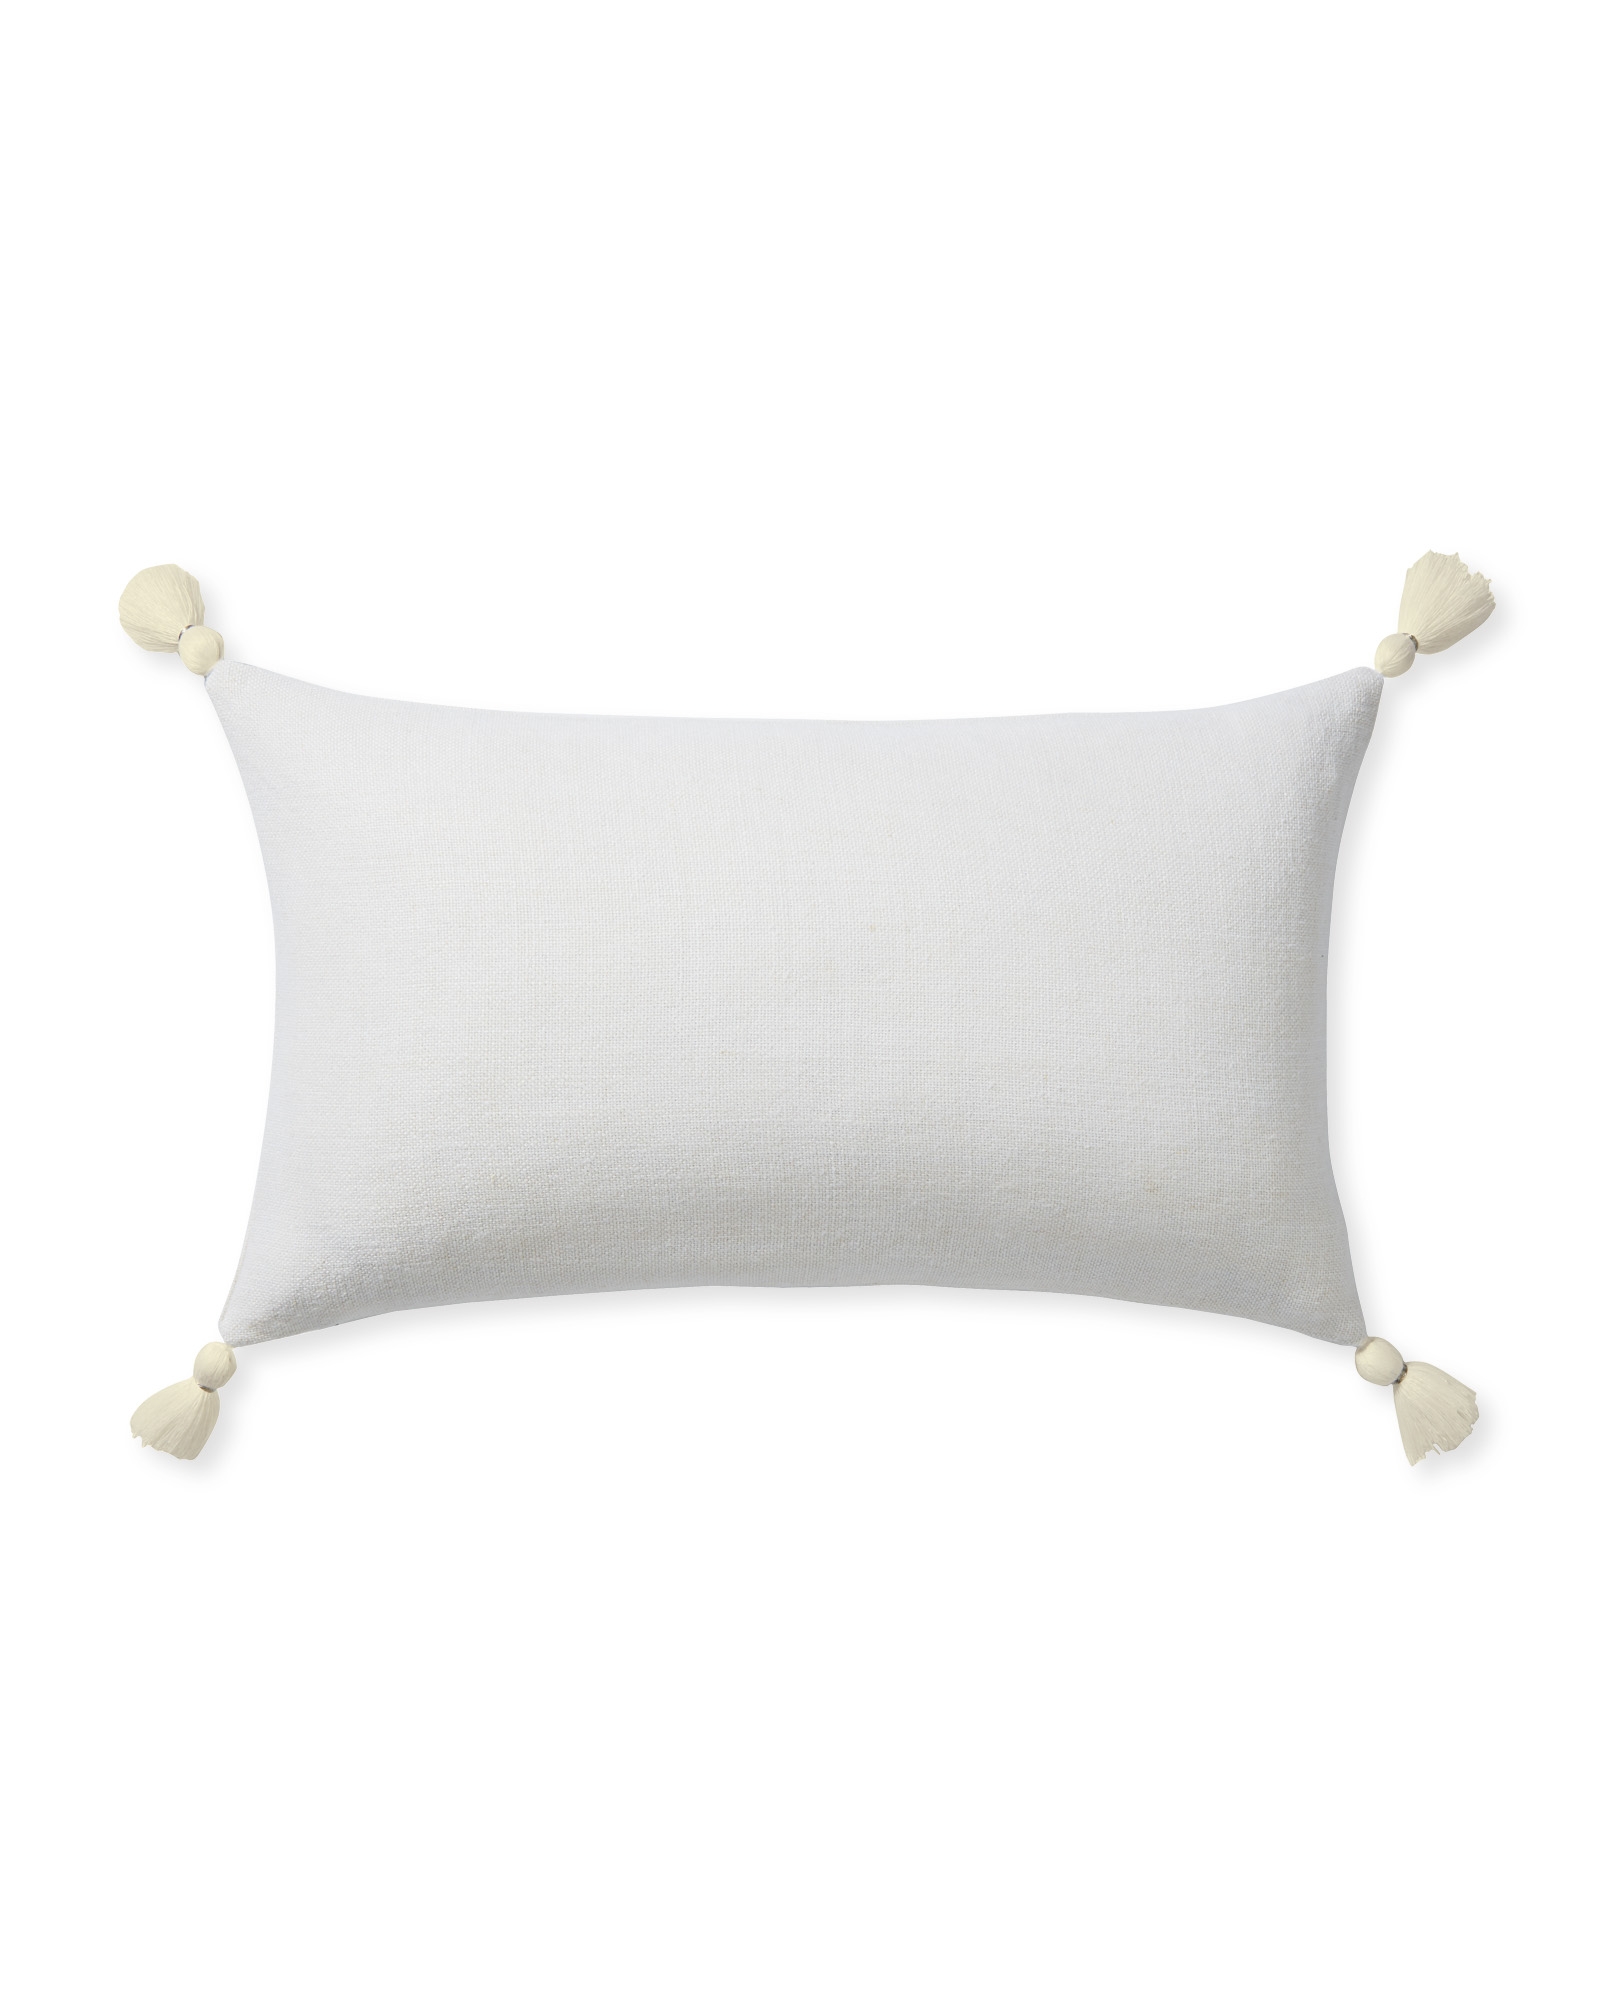 Eva Tassel 12" x 21" Pillow Cover - White - Insert sold separately - Image 0